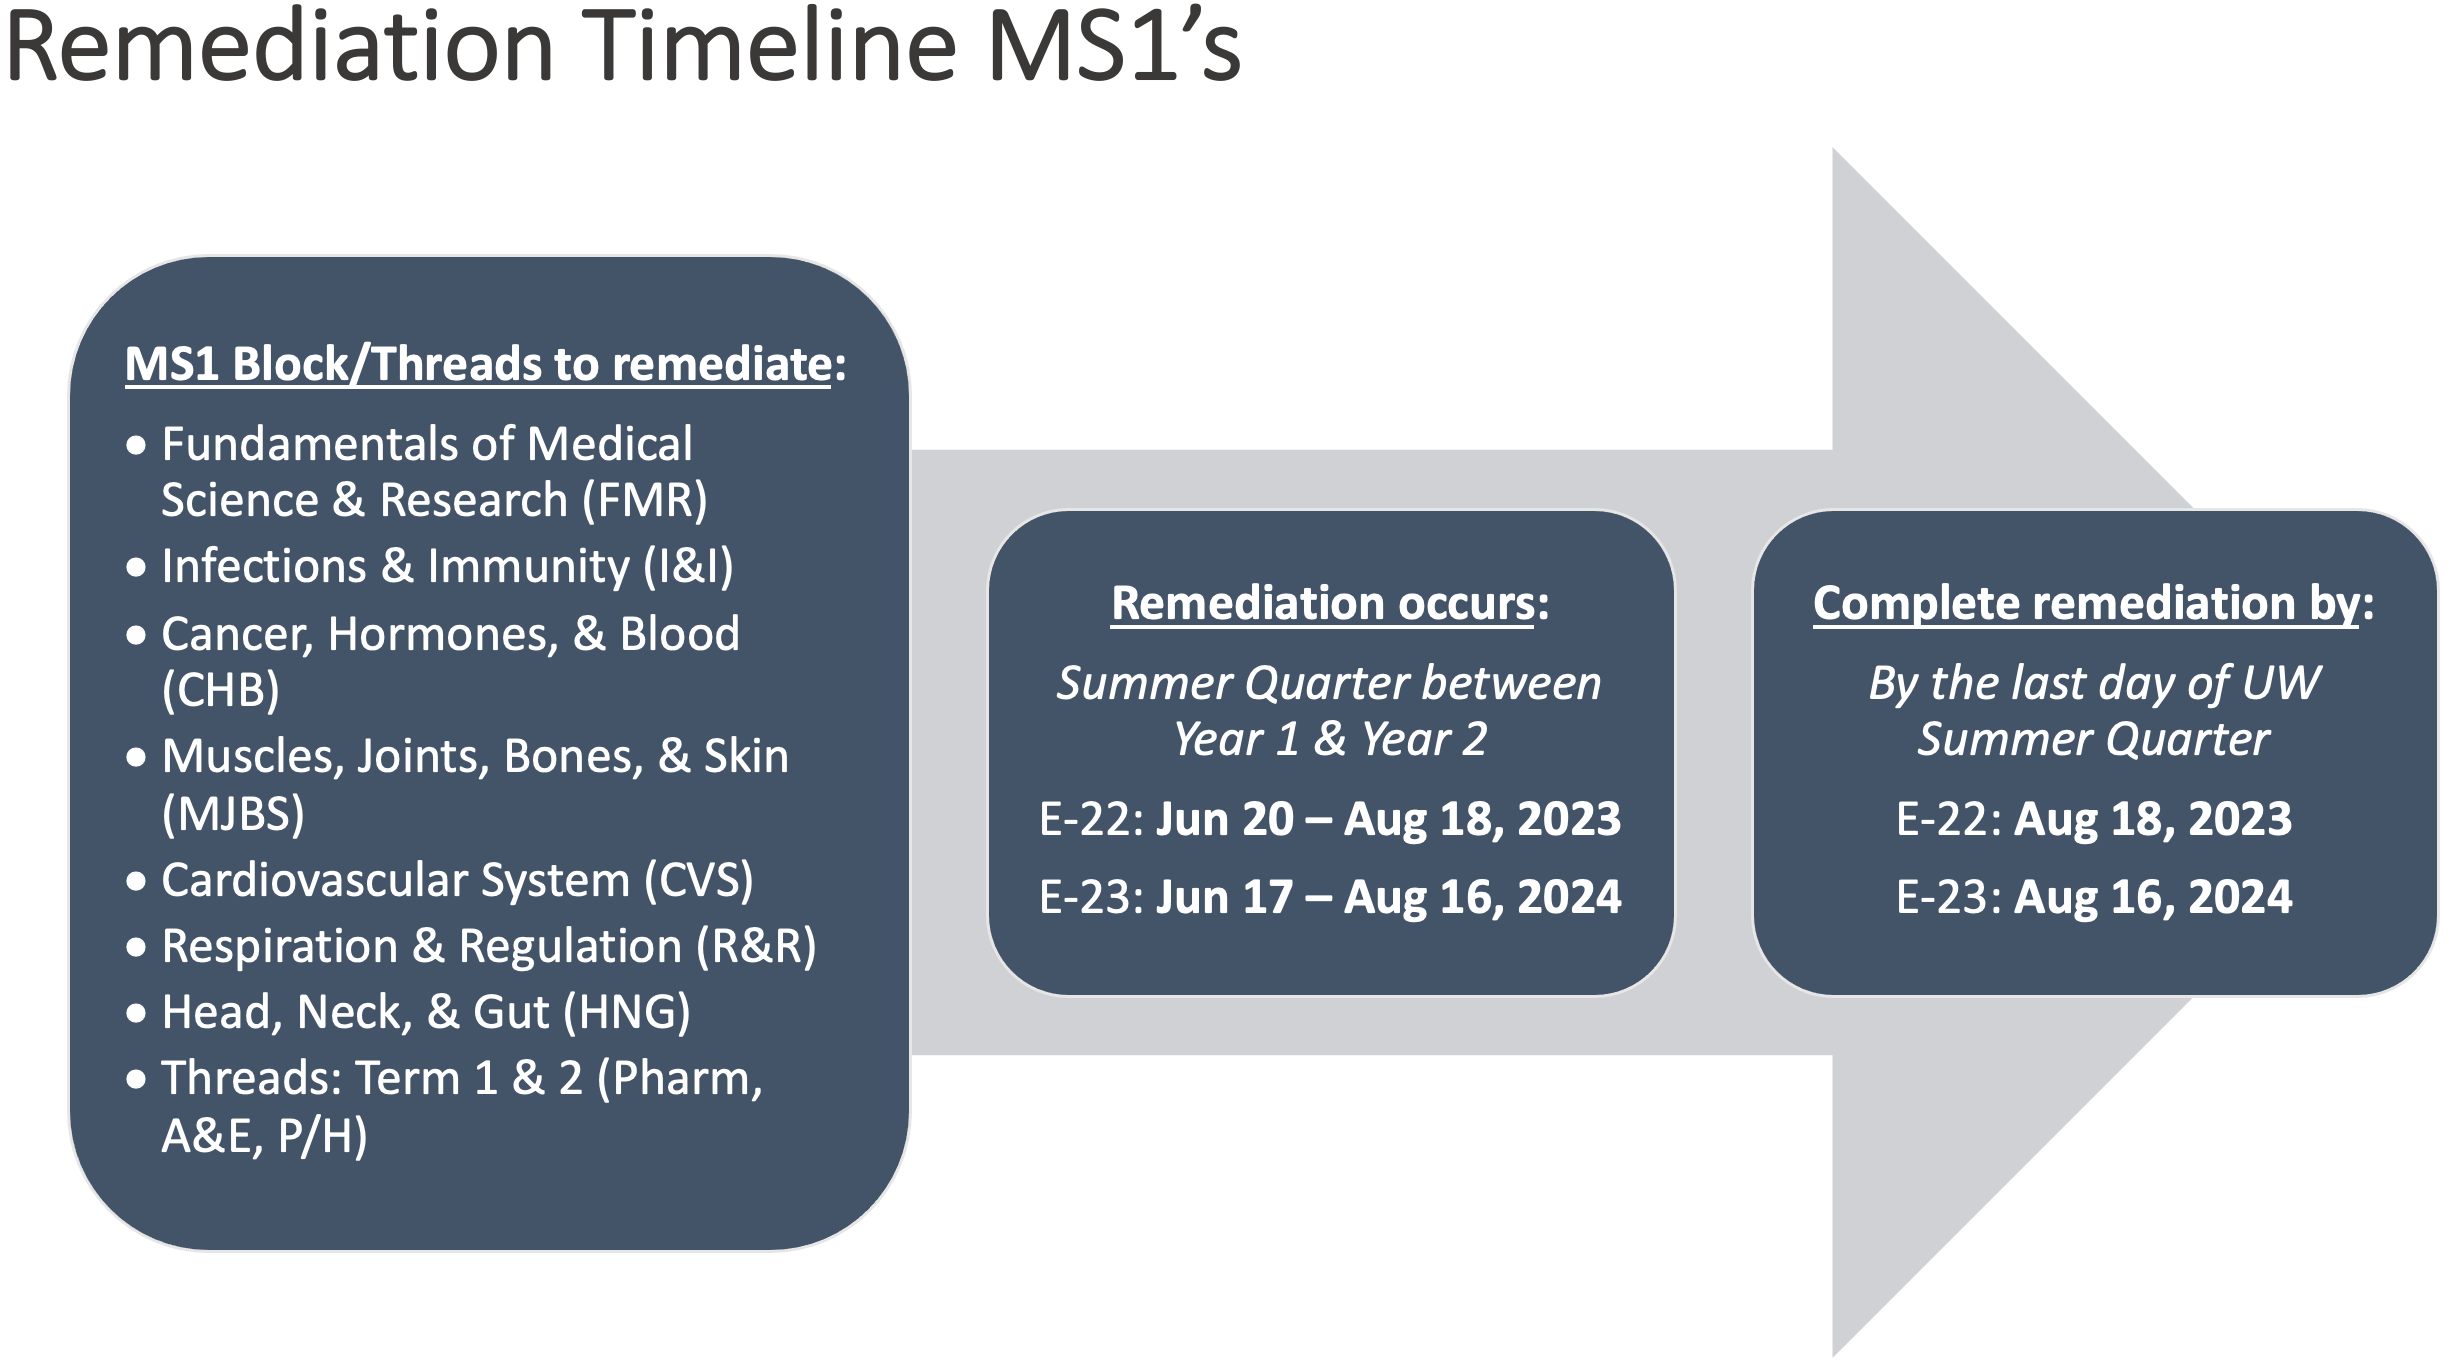 Remediation timeline MS1's